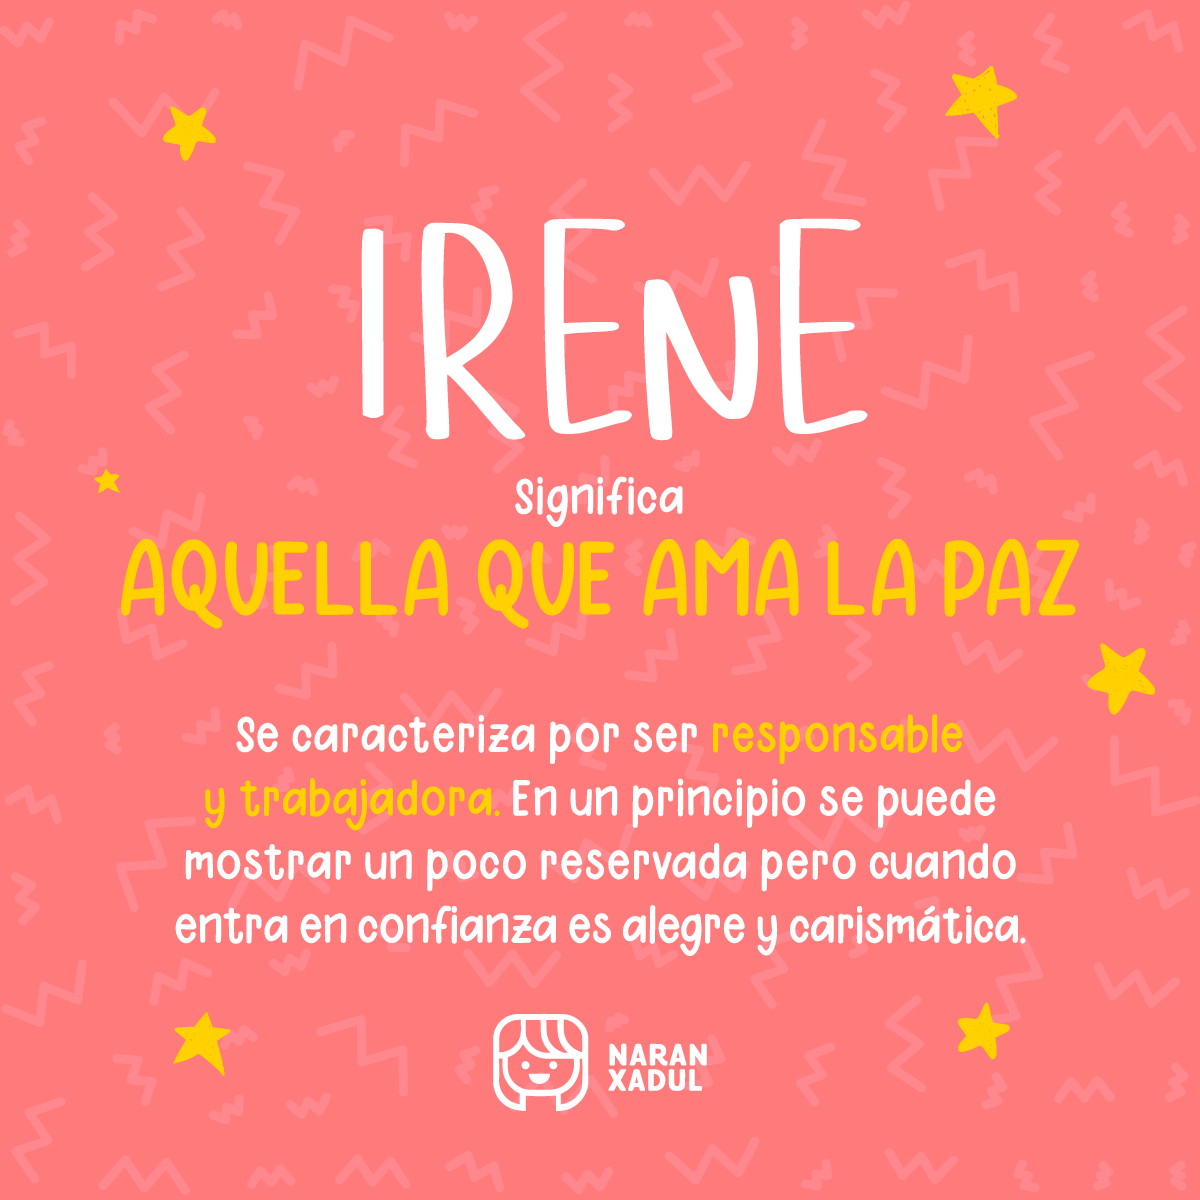 Significado de Irene